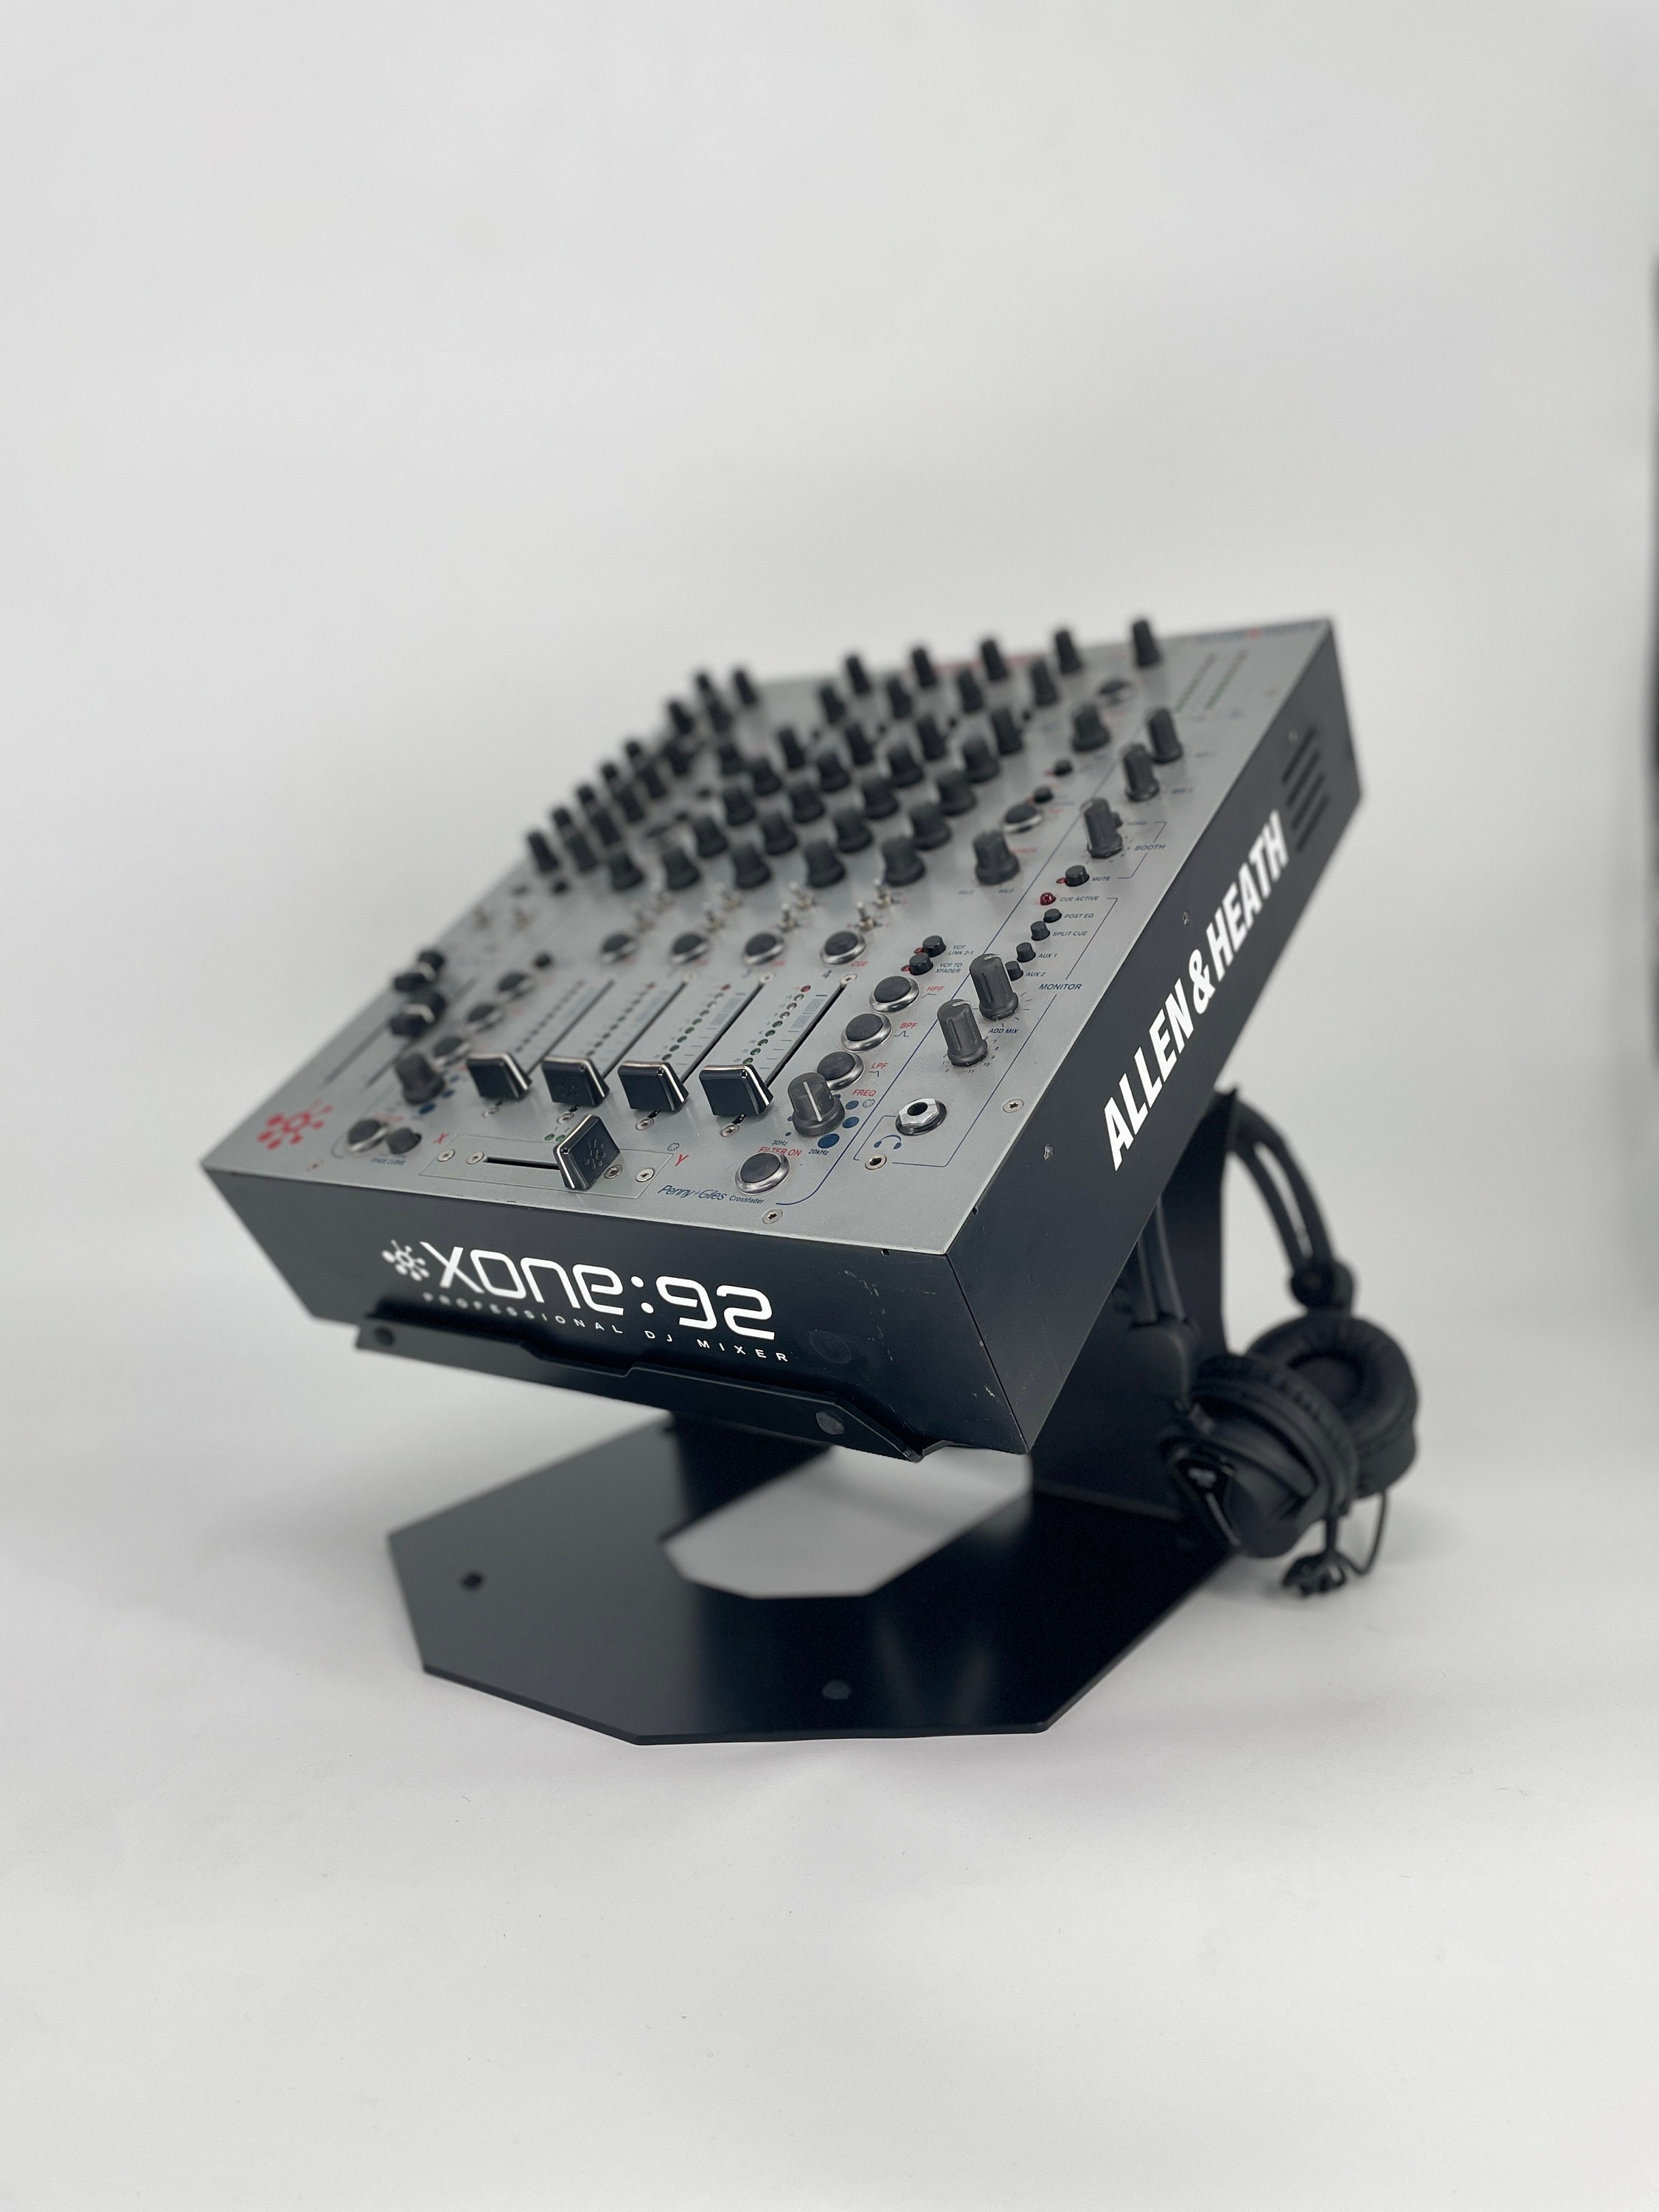 Mesas de mezclas - Plastic Shop - Tienda de sonido, DJ y producción musical